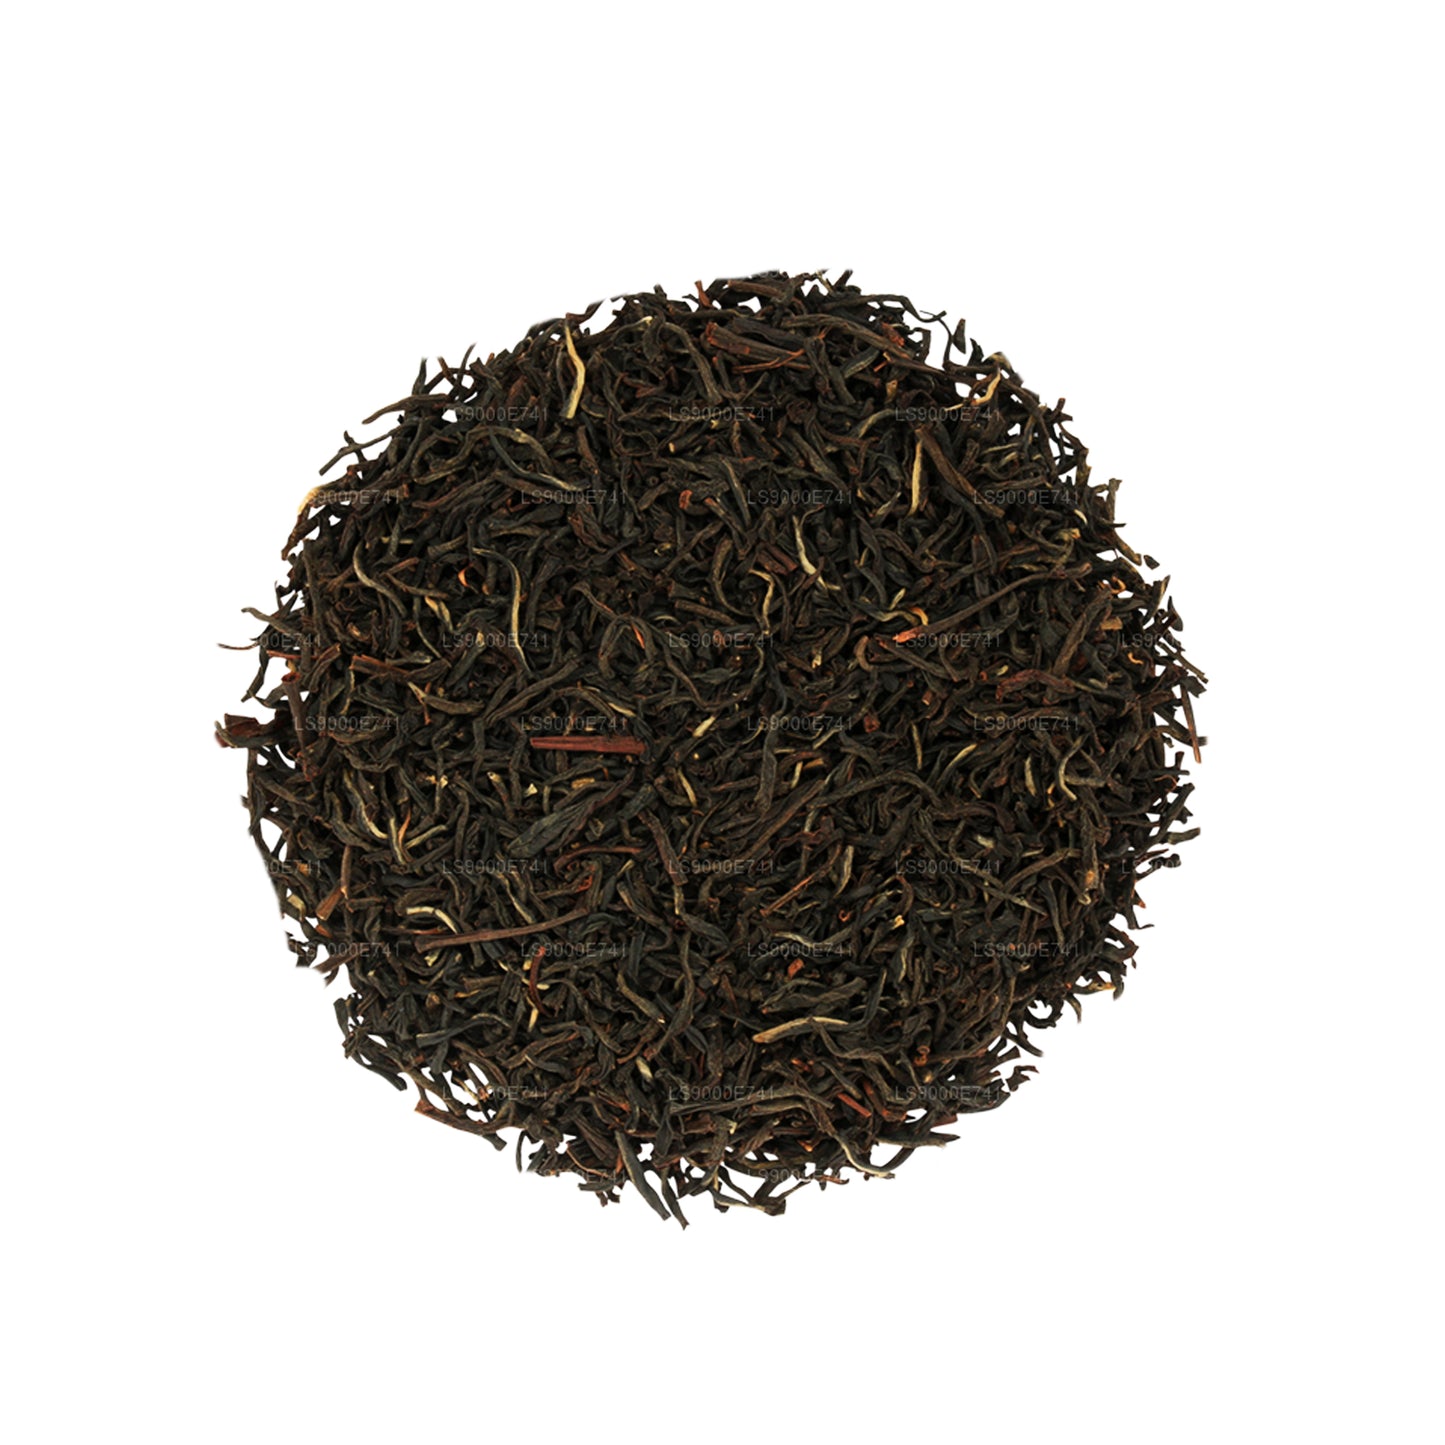 Basilur Island of Tea "Special" (100g) Caddy